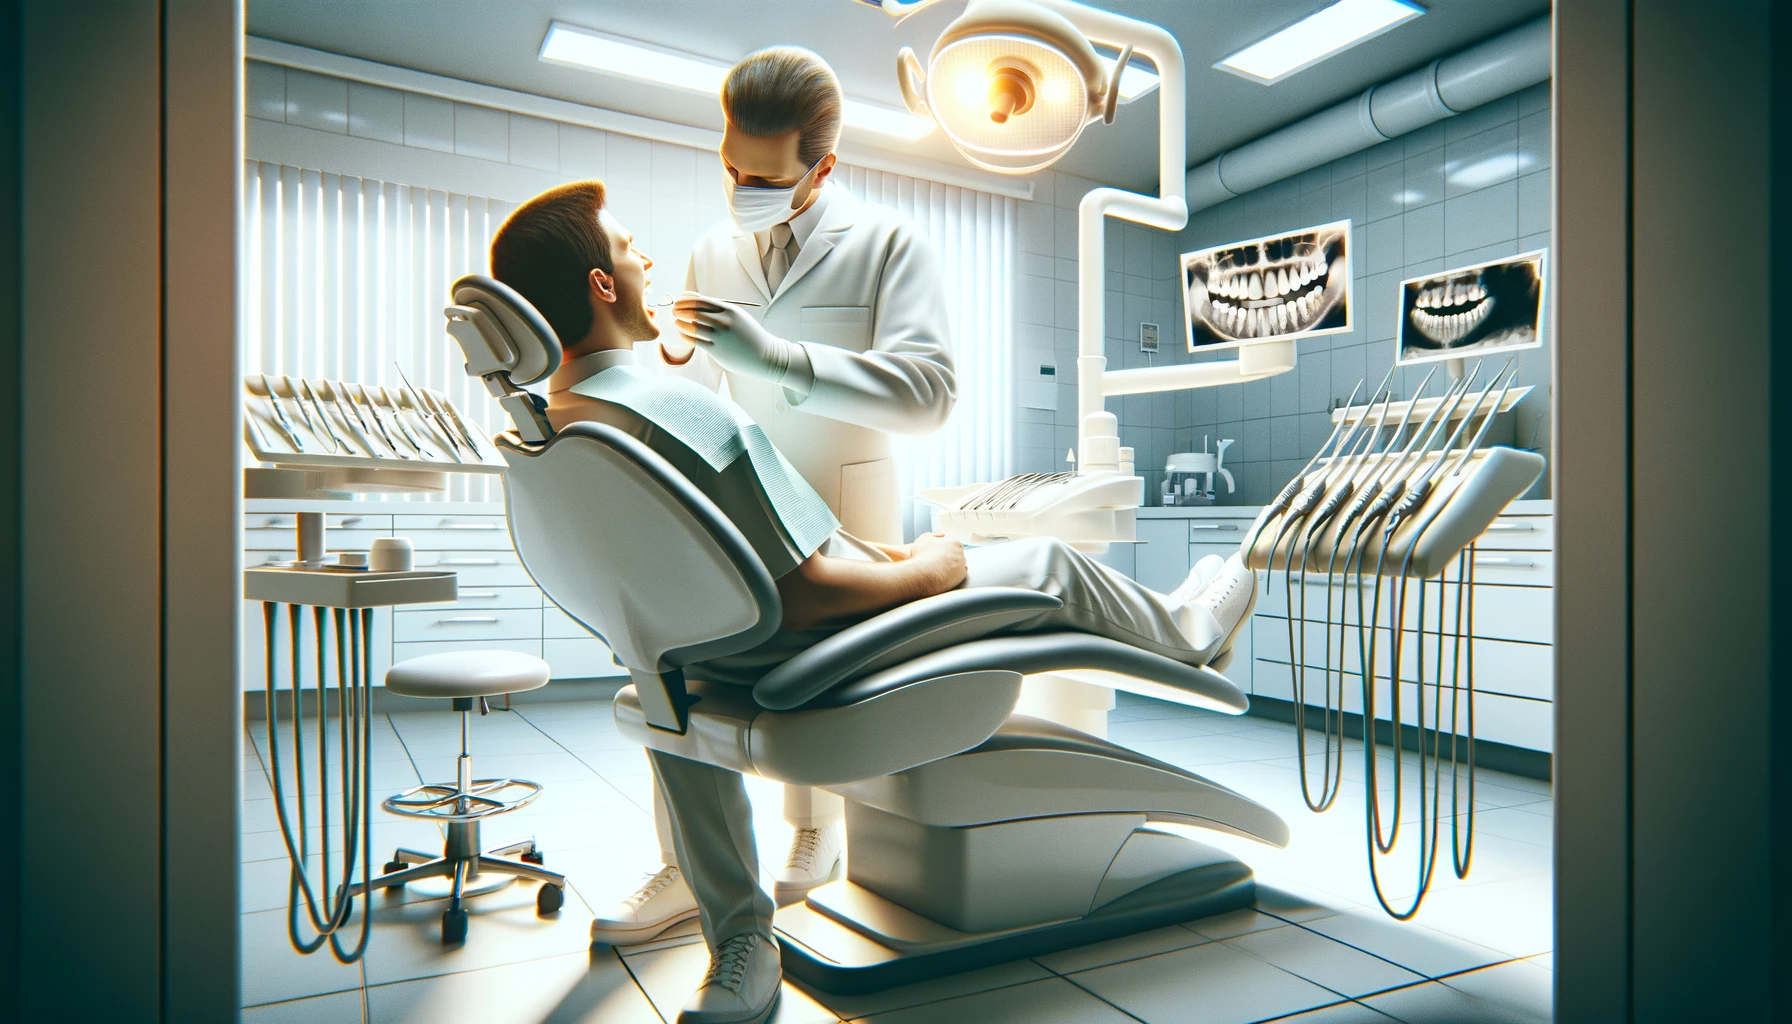 Bilde av en tannlegeklinikk der en tannlege setter på en tannkrone for en pasient i en moderne og ren setting kunstig tannkrone rundt tannen og beskytter kunstig krone